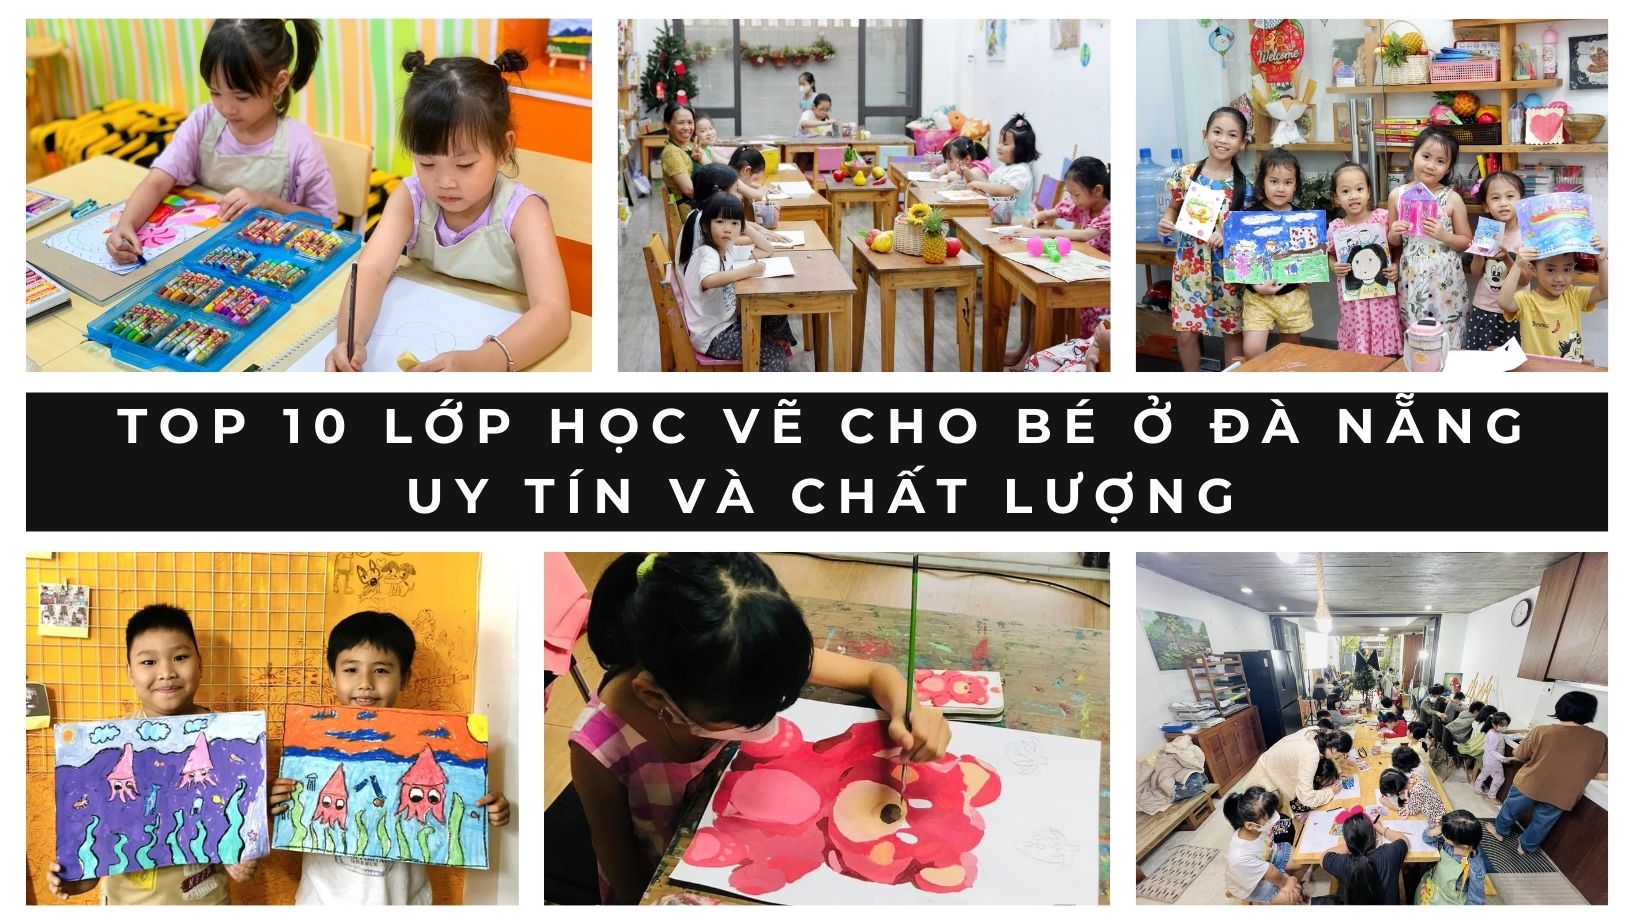 Top 10 lớp học vẽ cho bé ở Đà Nẵng uy tín và chất lượng